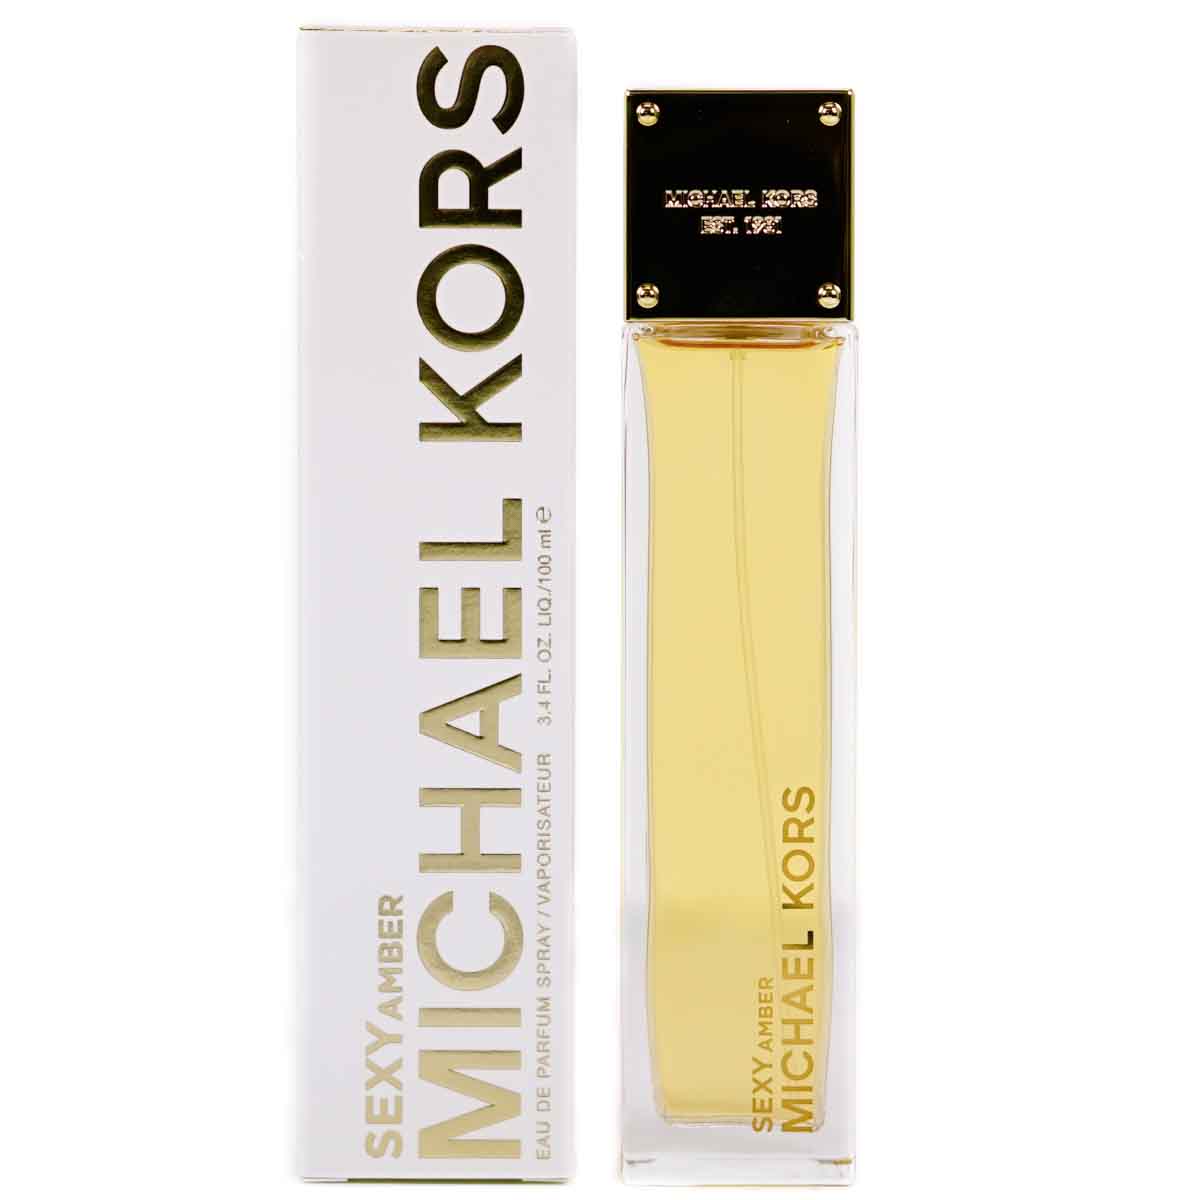 Michael Kors Sexy Amber 100ml Eau De Parfum